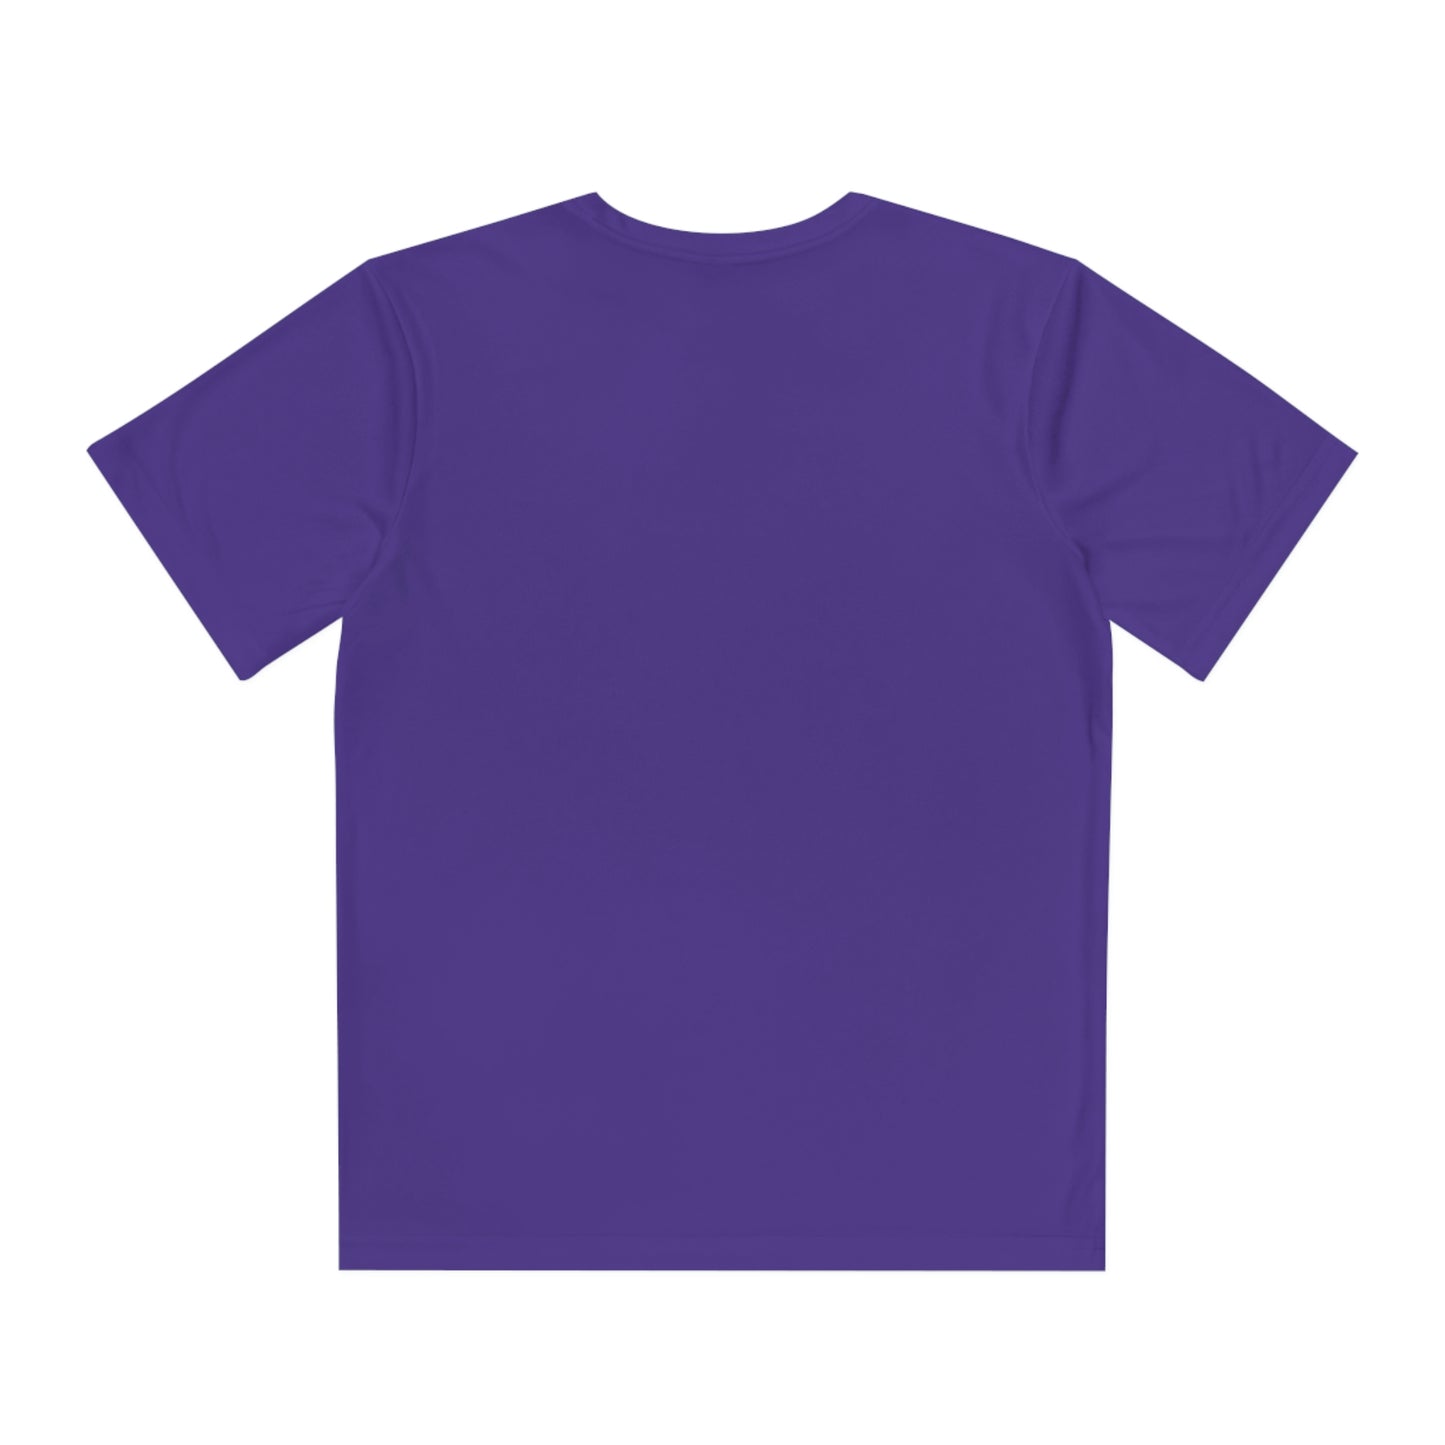 Athletic House Shirt [Youth Sizes]